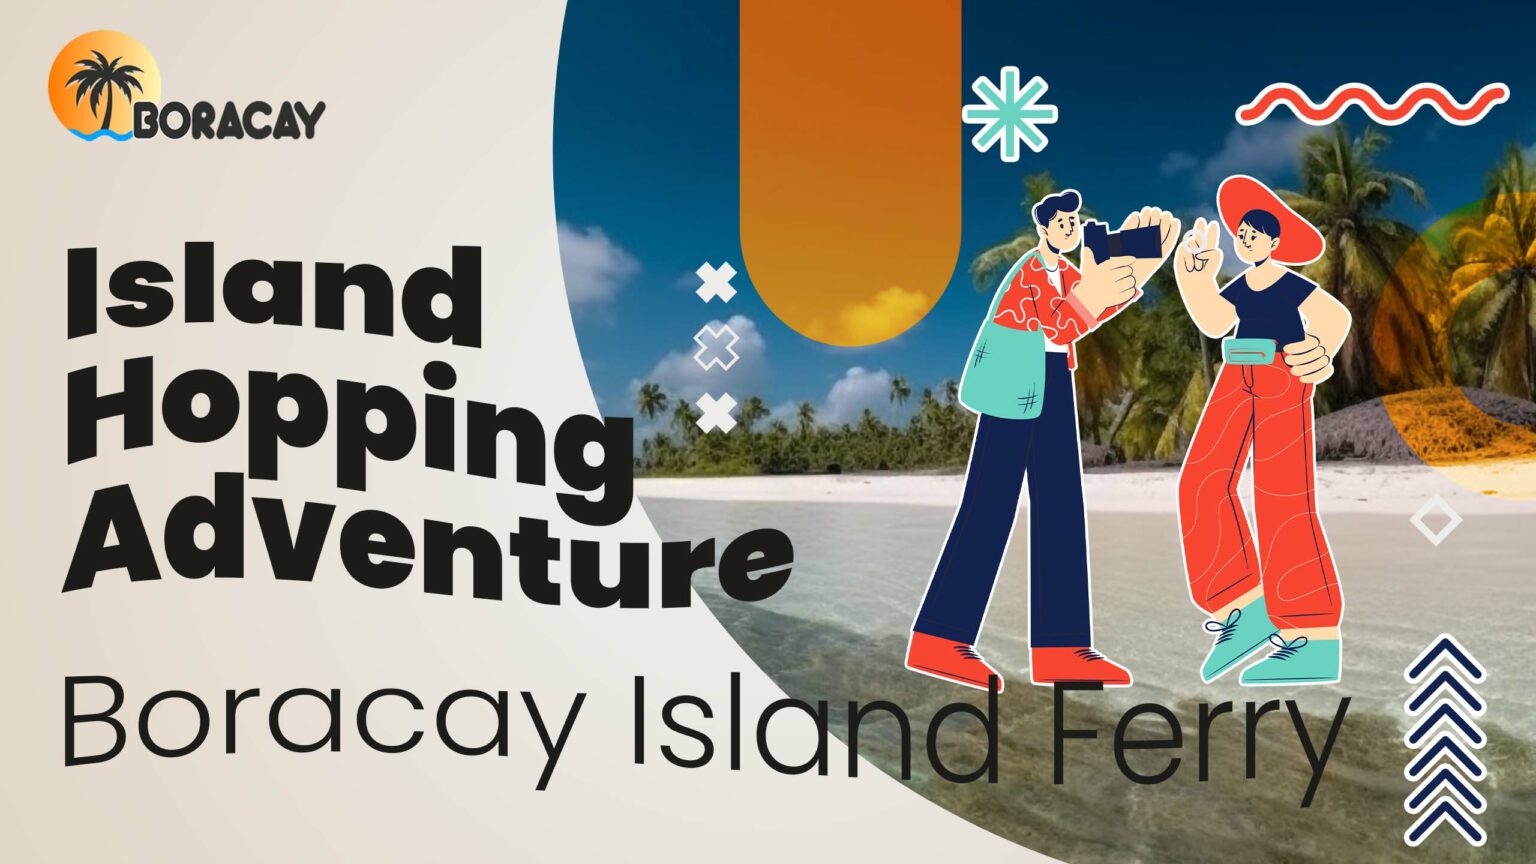 Boracay Island Ferry